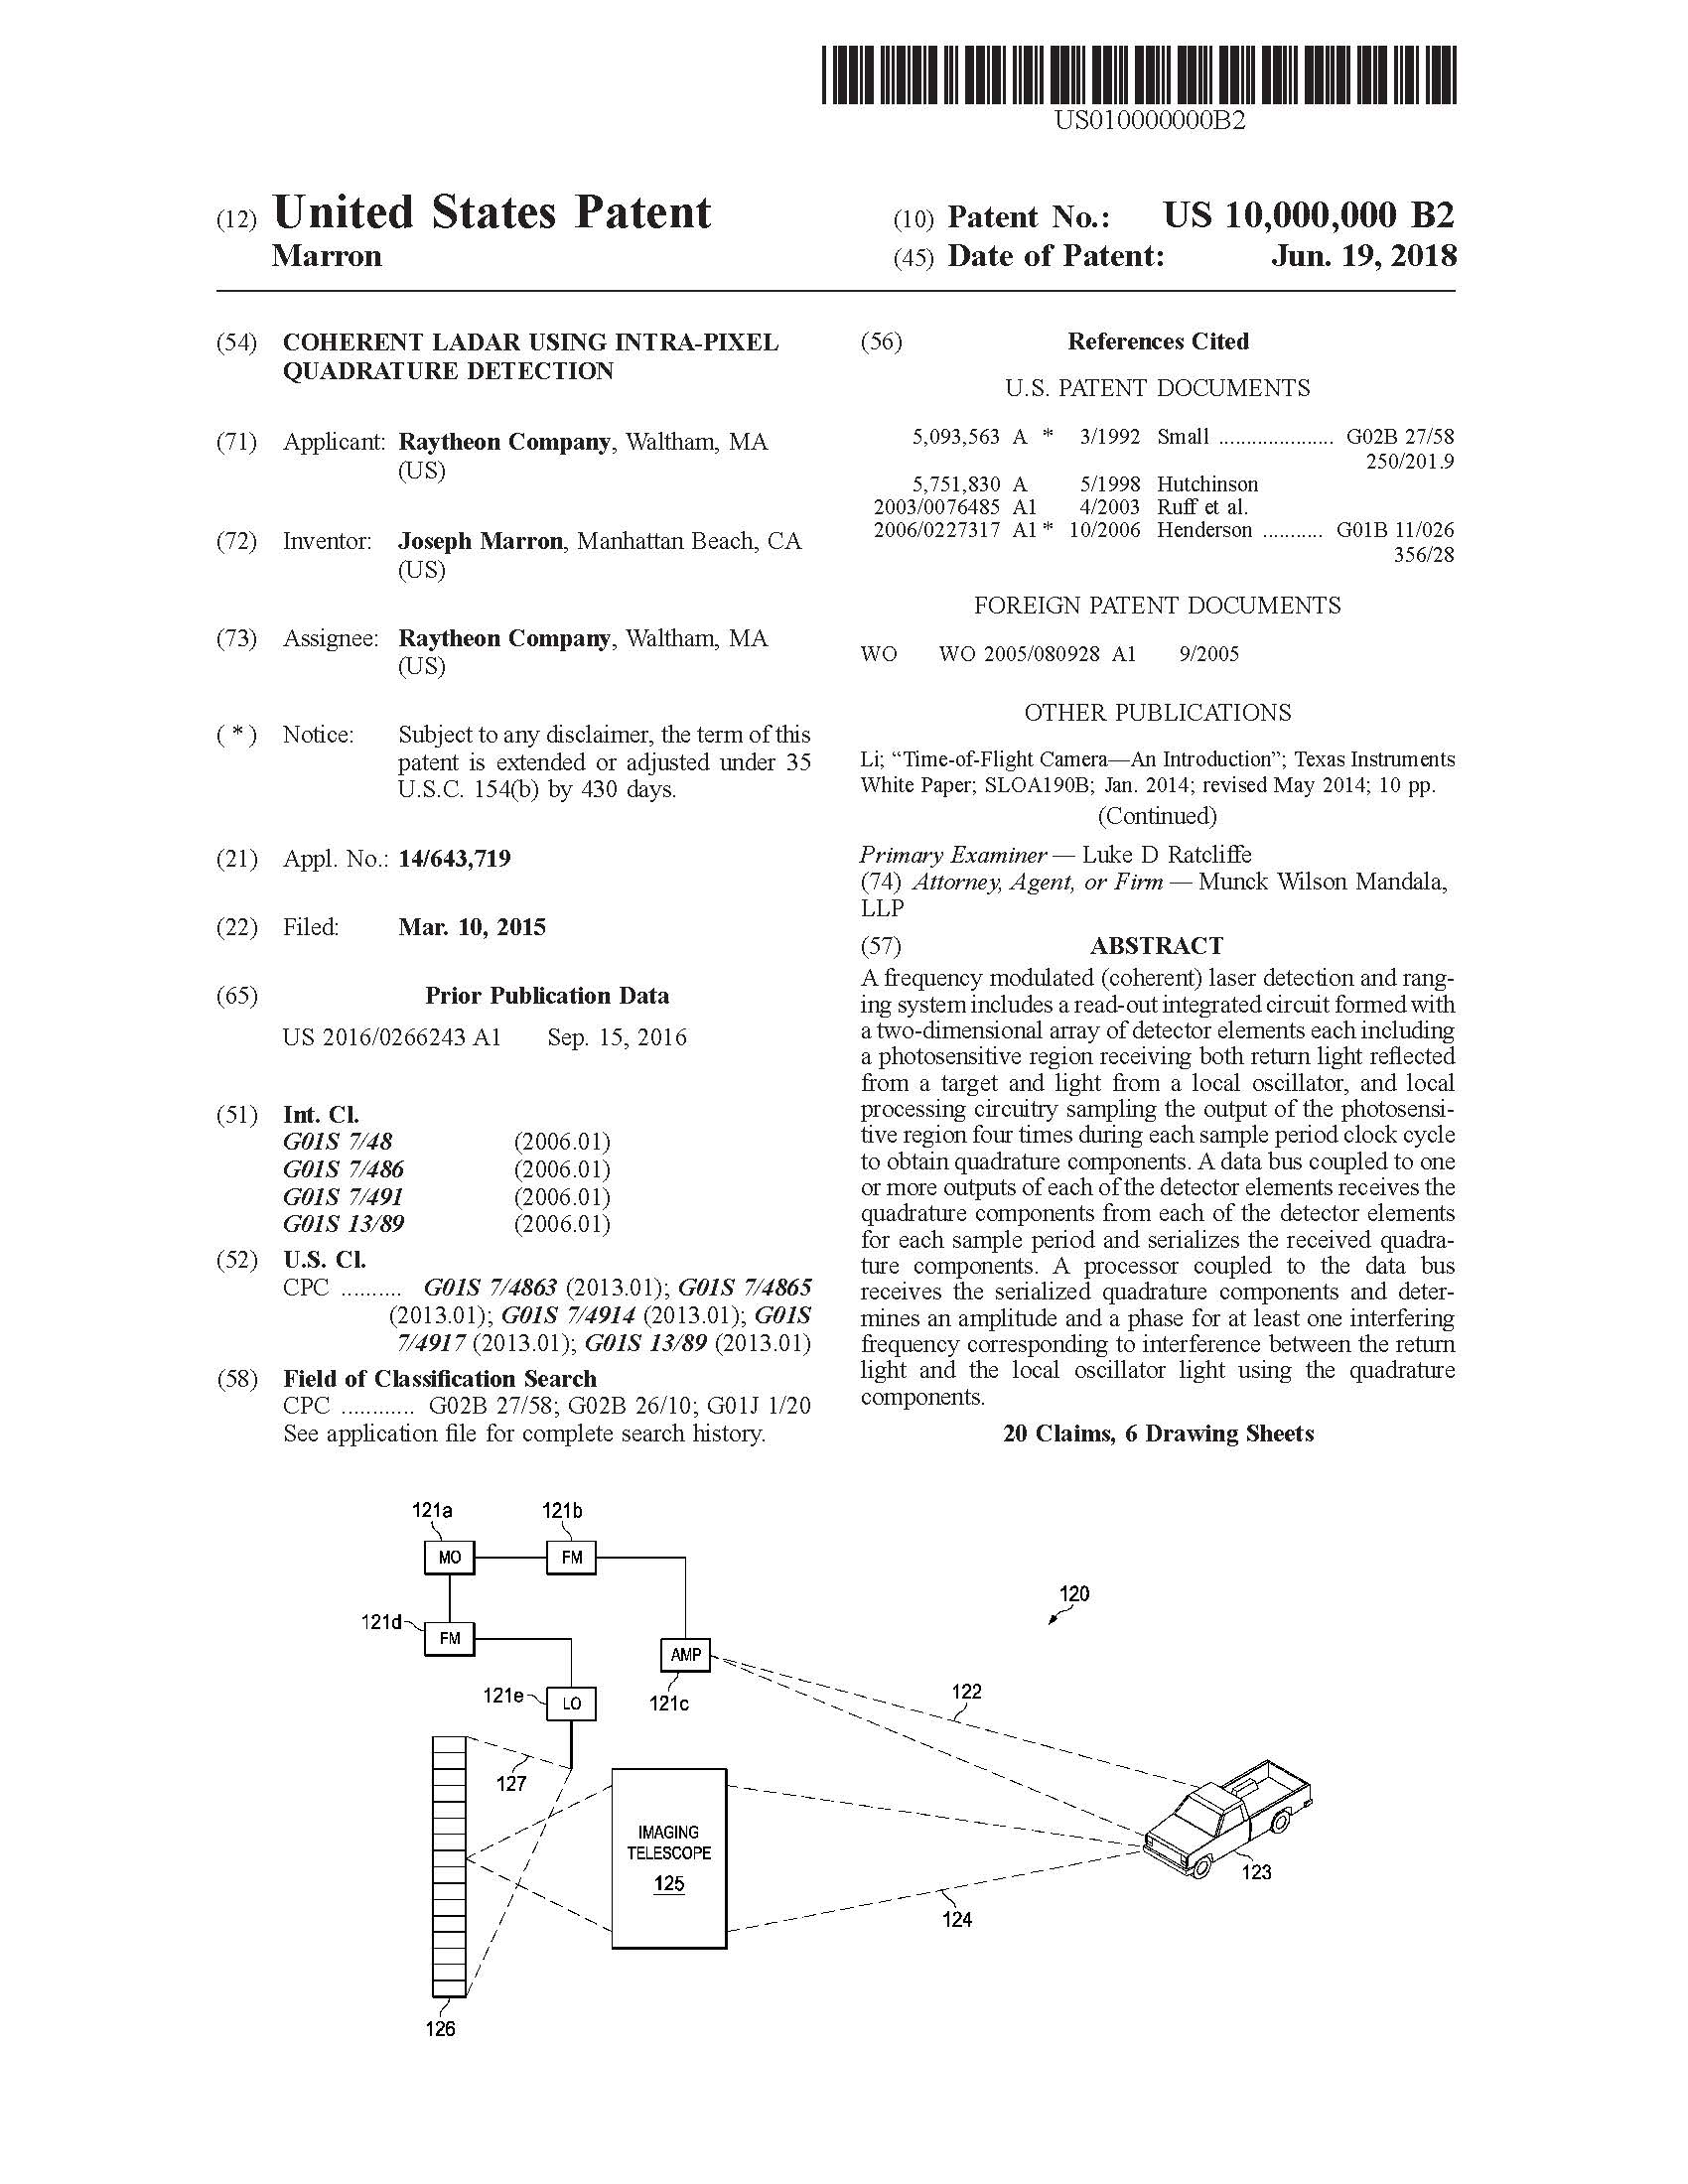 Coherent Ladar Using Intra-Pixel Quadrature Detection Patent